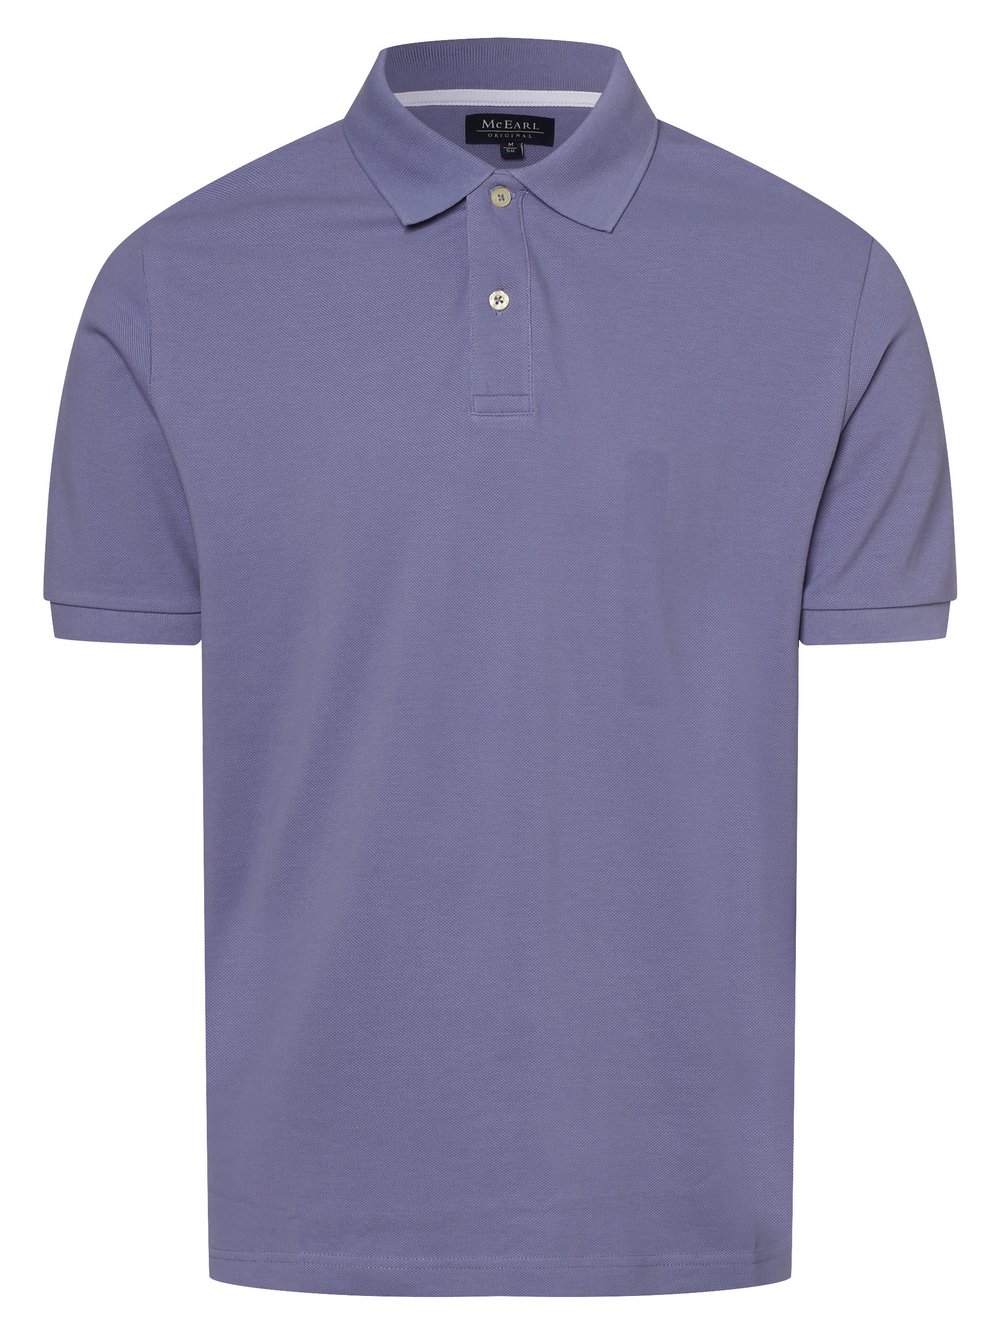 Mc Earl - Męska koszulka polo, lila|niebieski